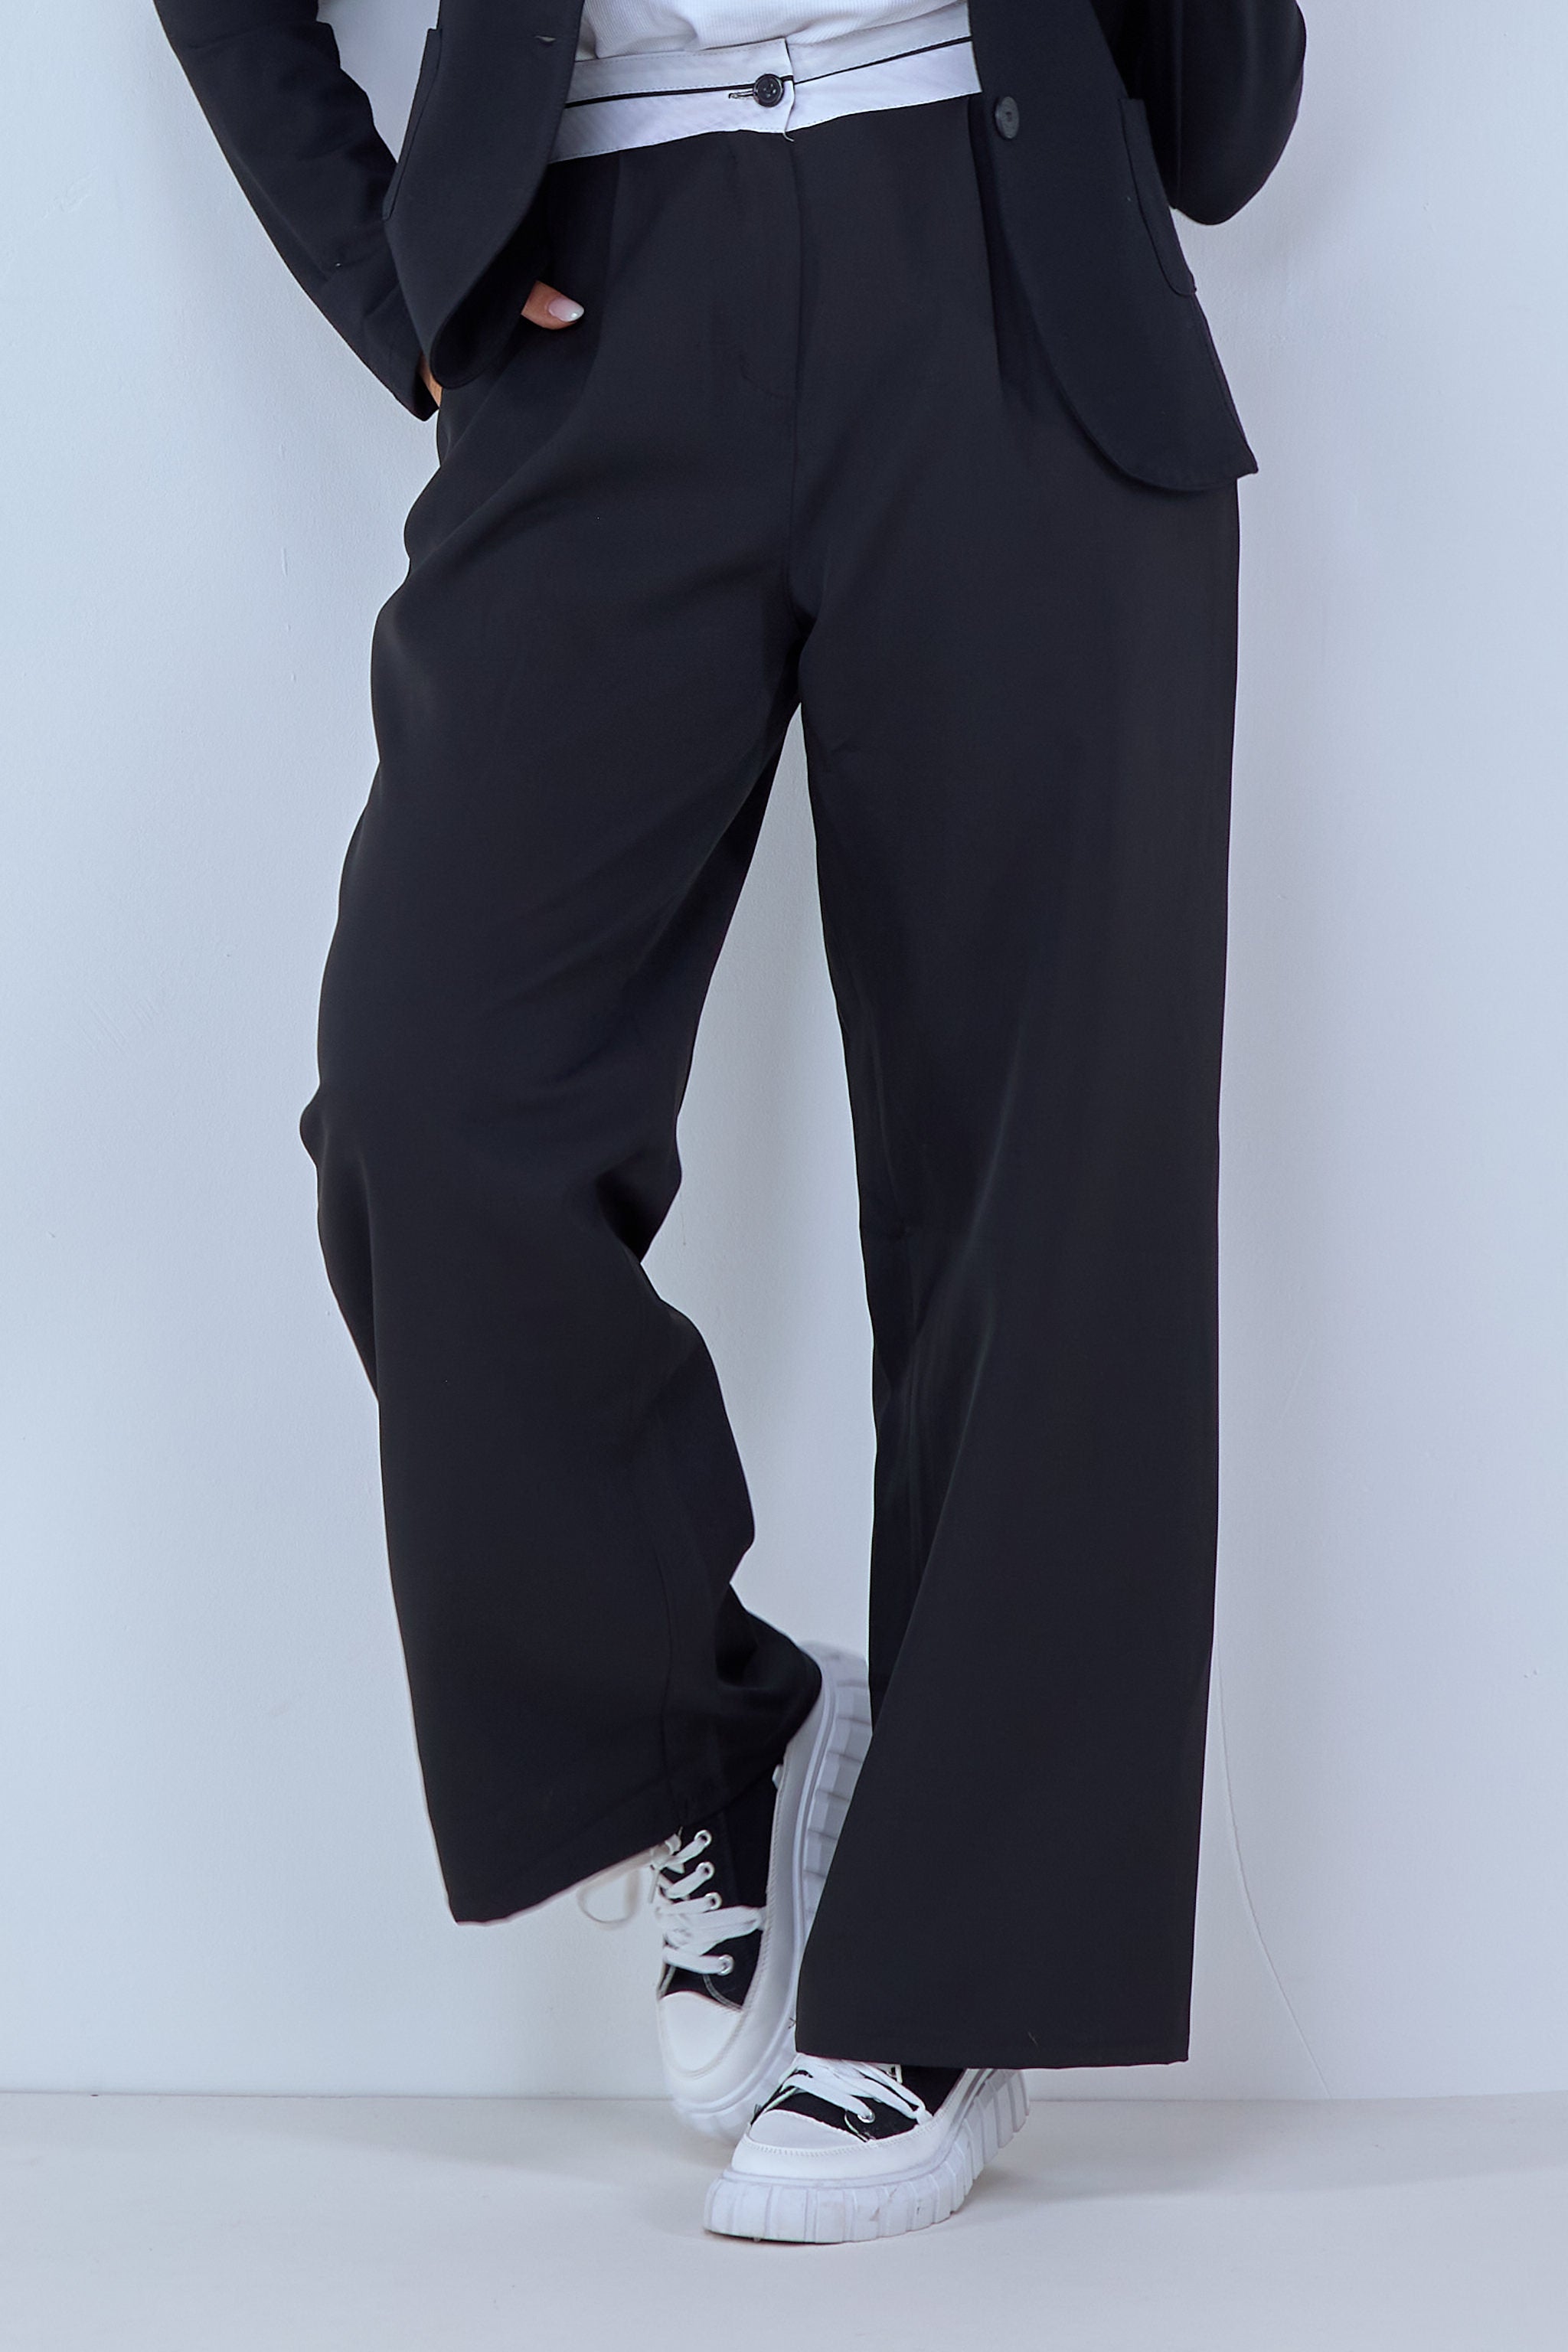 schwarze Bundfaltenhose mit weißem Bund von Trends & Lifestyle Deutschland GmbH